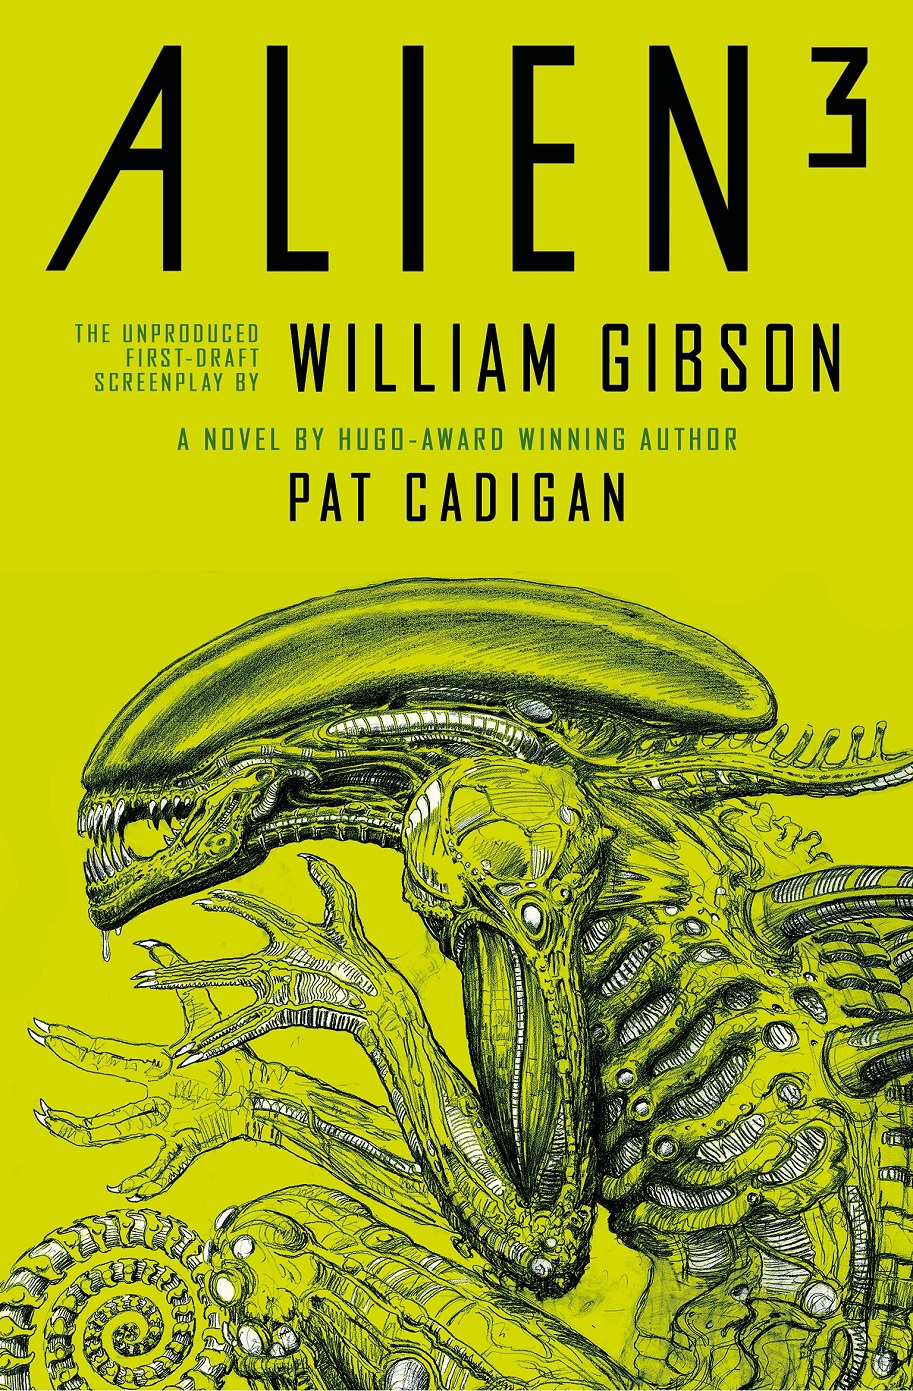 Alien 3 William Gibson Pat Cadigan